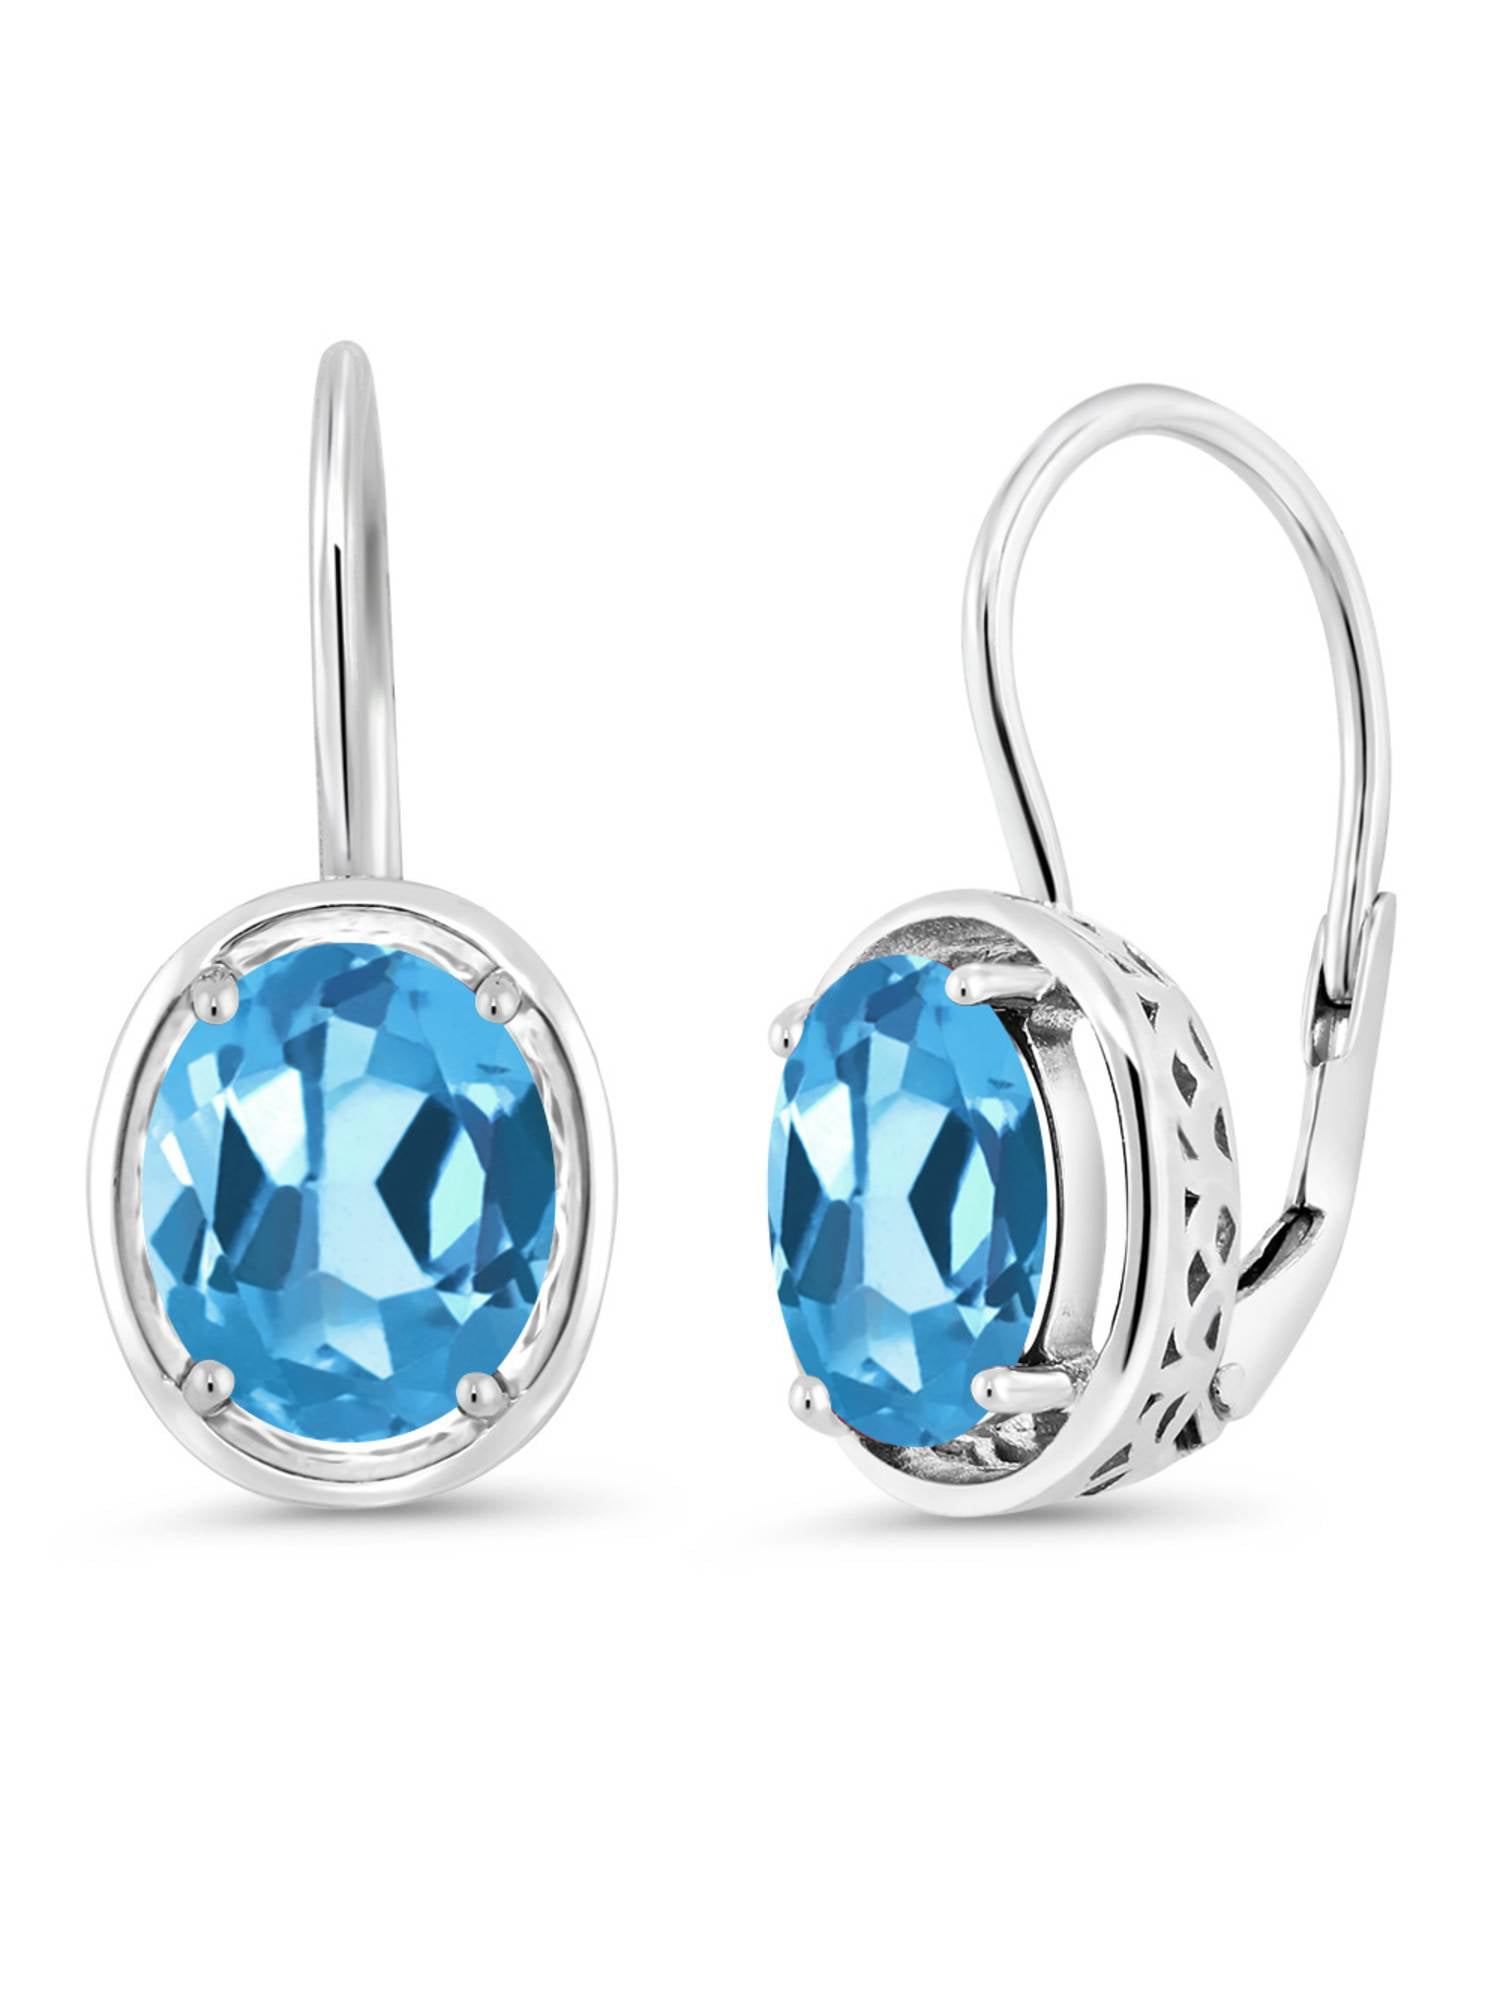 Sterling Silver Drop Earrings w/ 6x3mm Marquise Cut Swiss Blue Topaz 